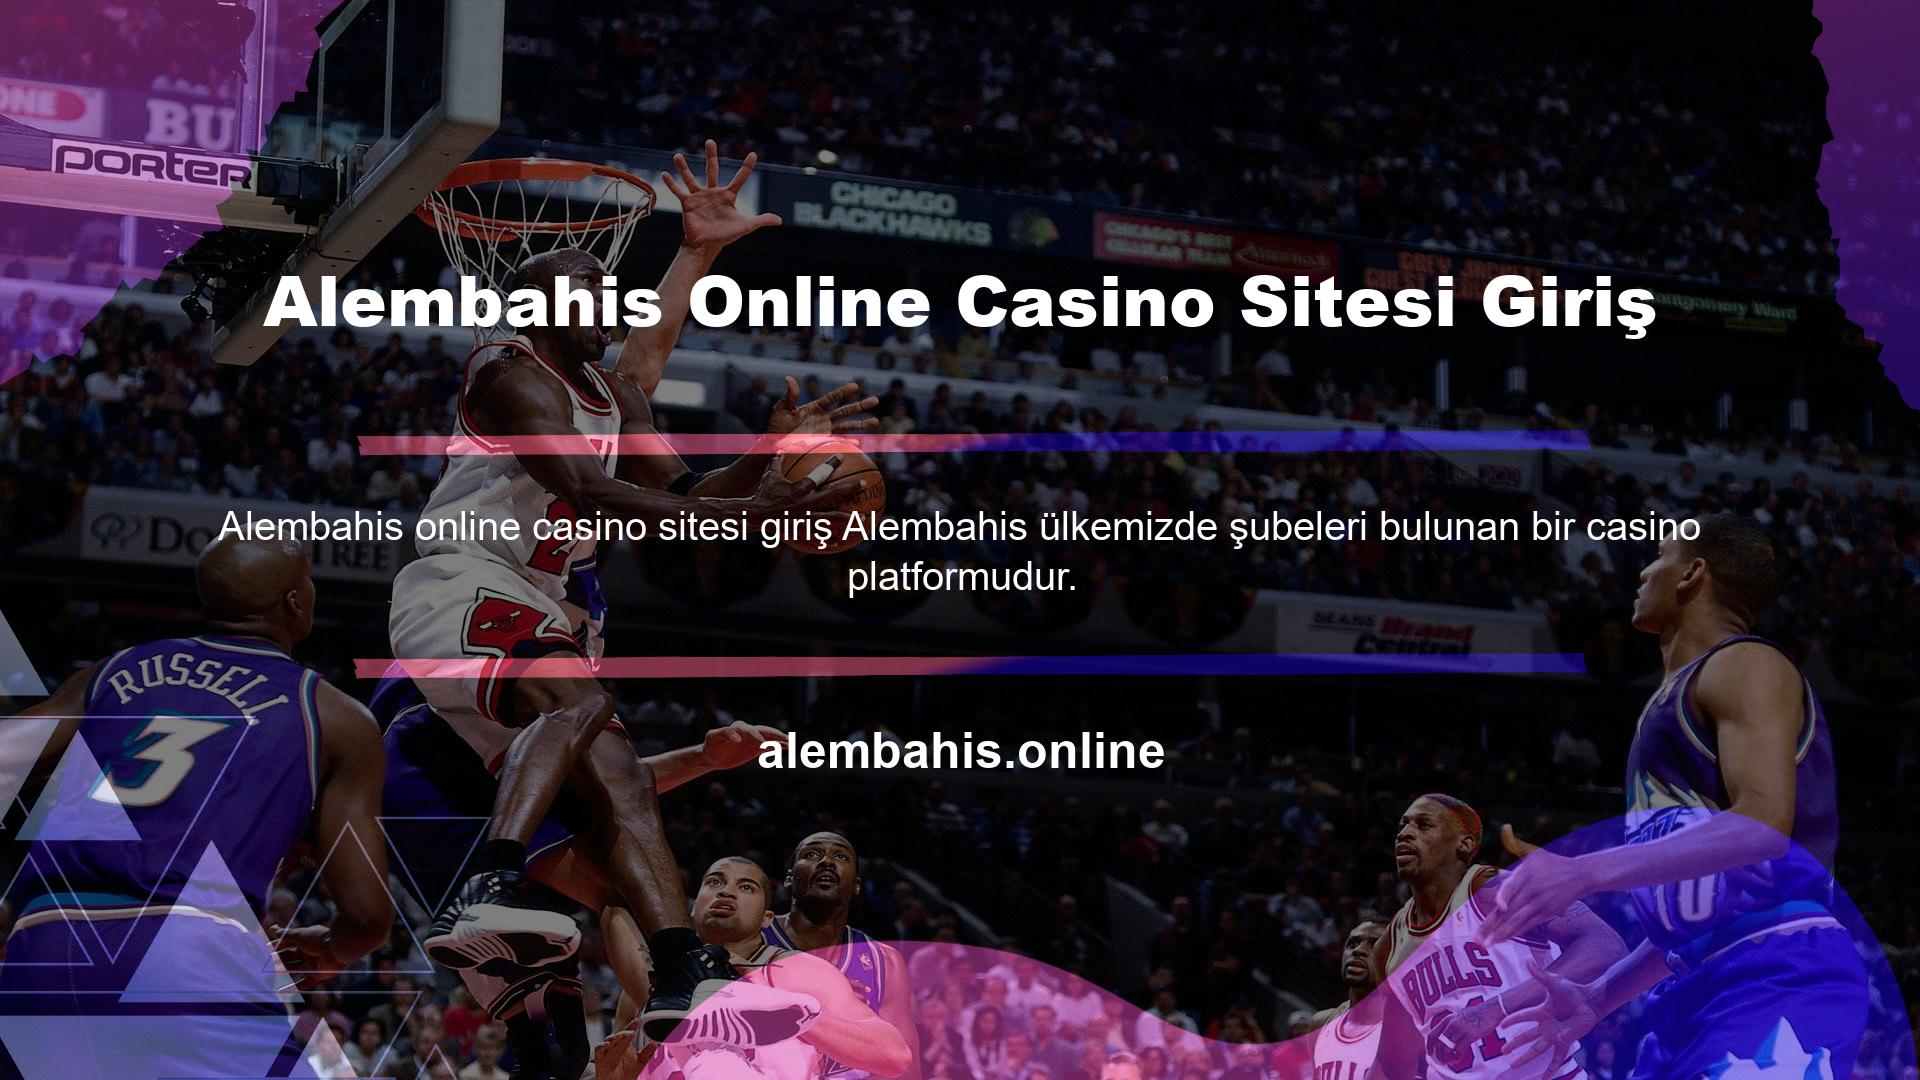 Ancak ülkemiz Bilgi Komisyonu Kanunu gereği casino içeriği barındıran web siteleri maalesef Türkiye'de yasaktır